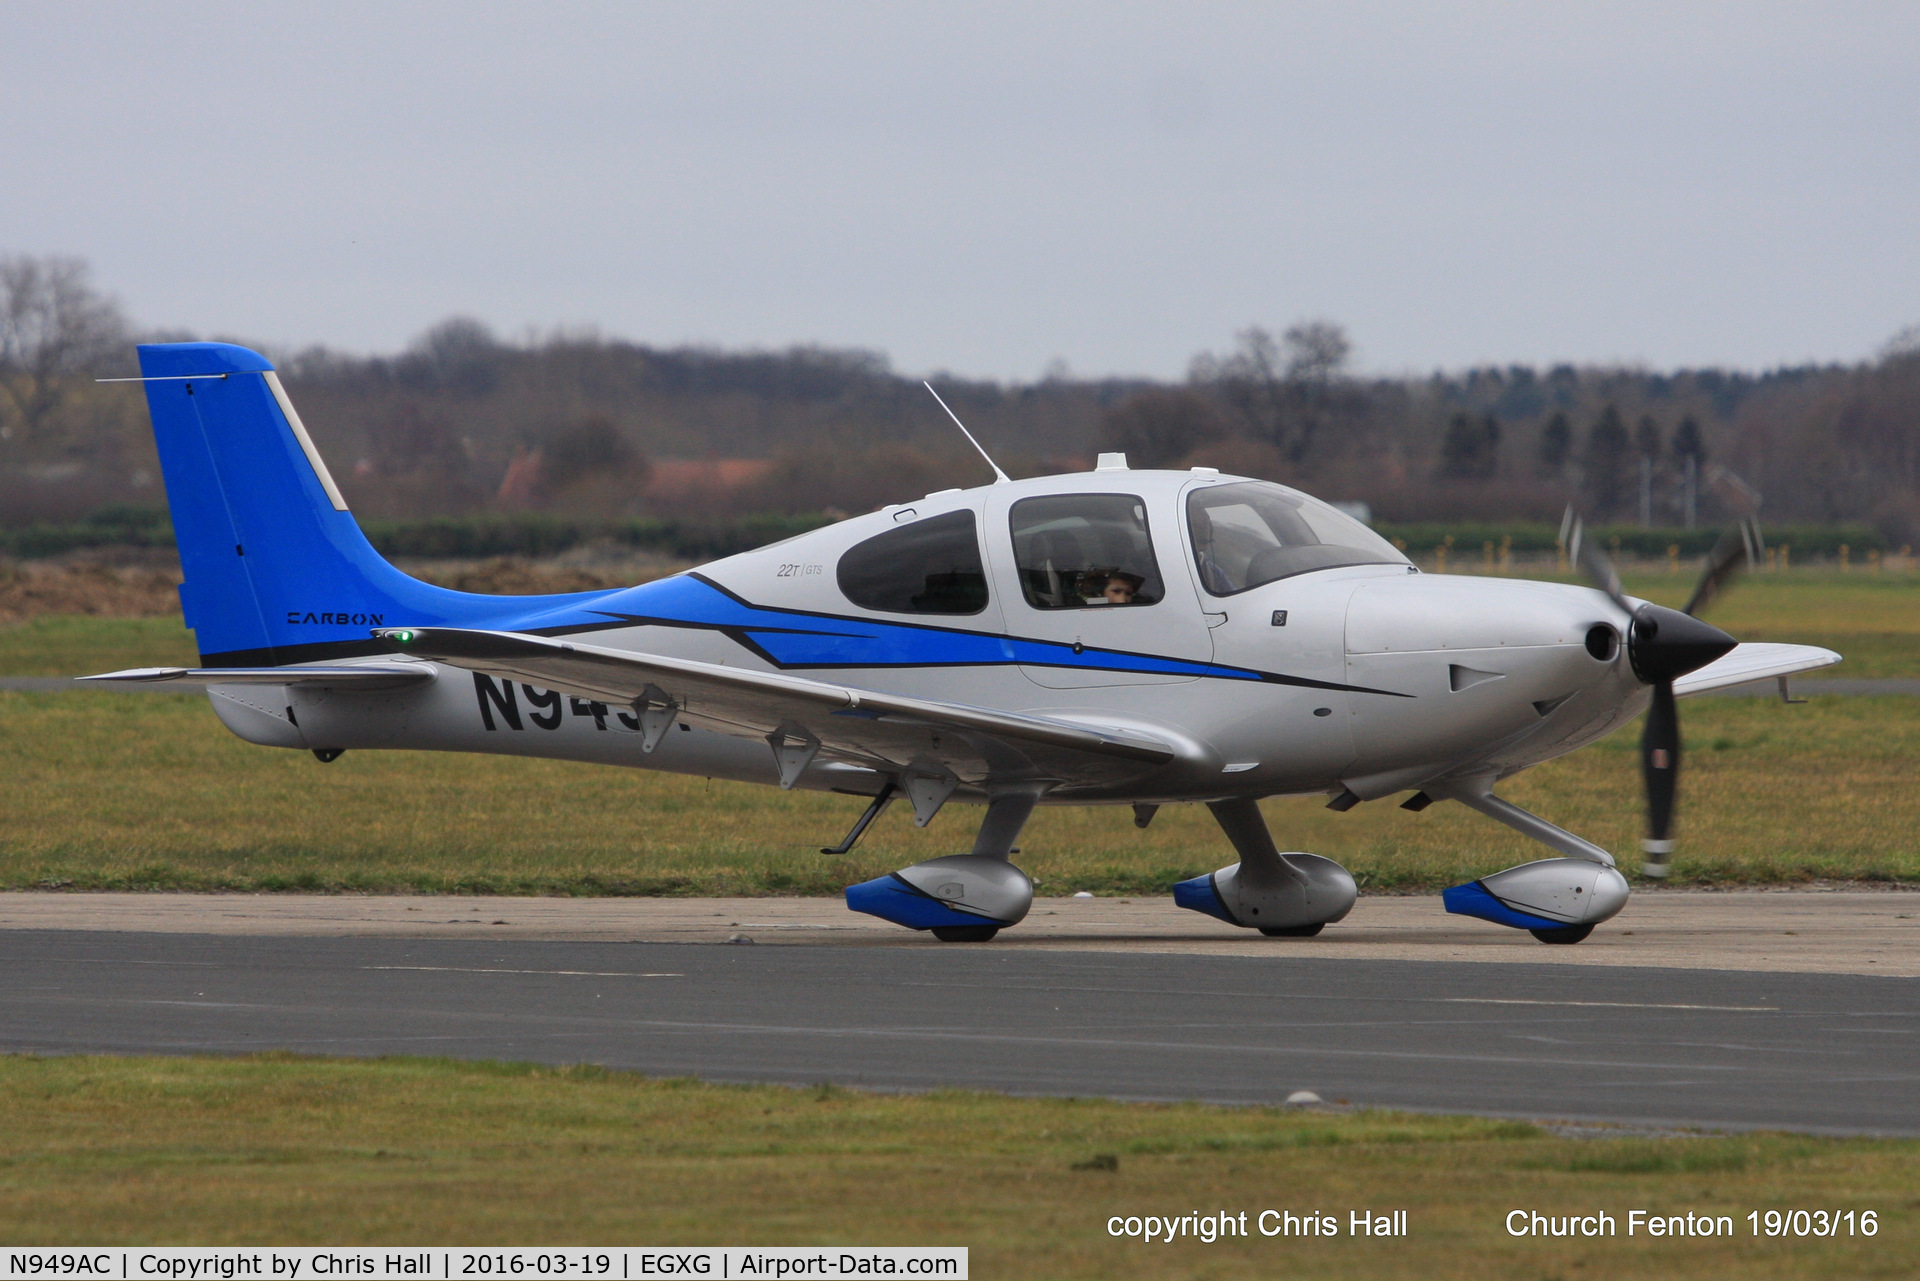 N949AC, 2014 Cirrus SR22T C/N 0833, at the Church Fenton fly in